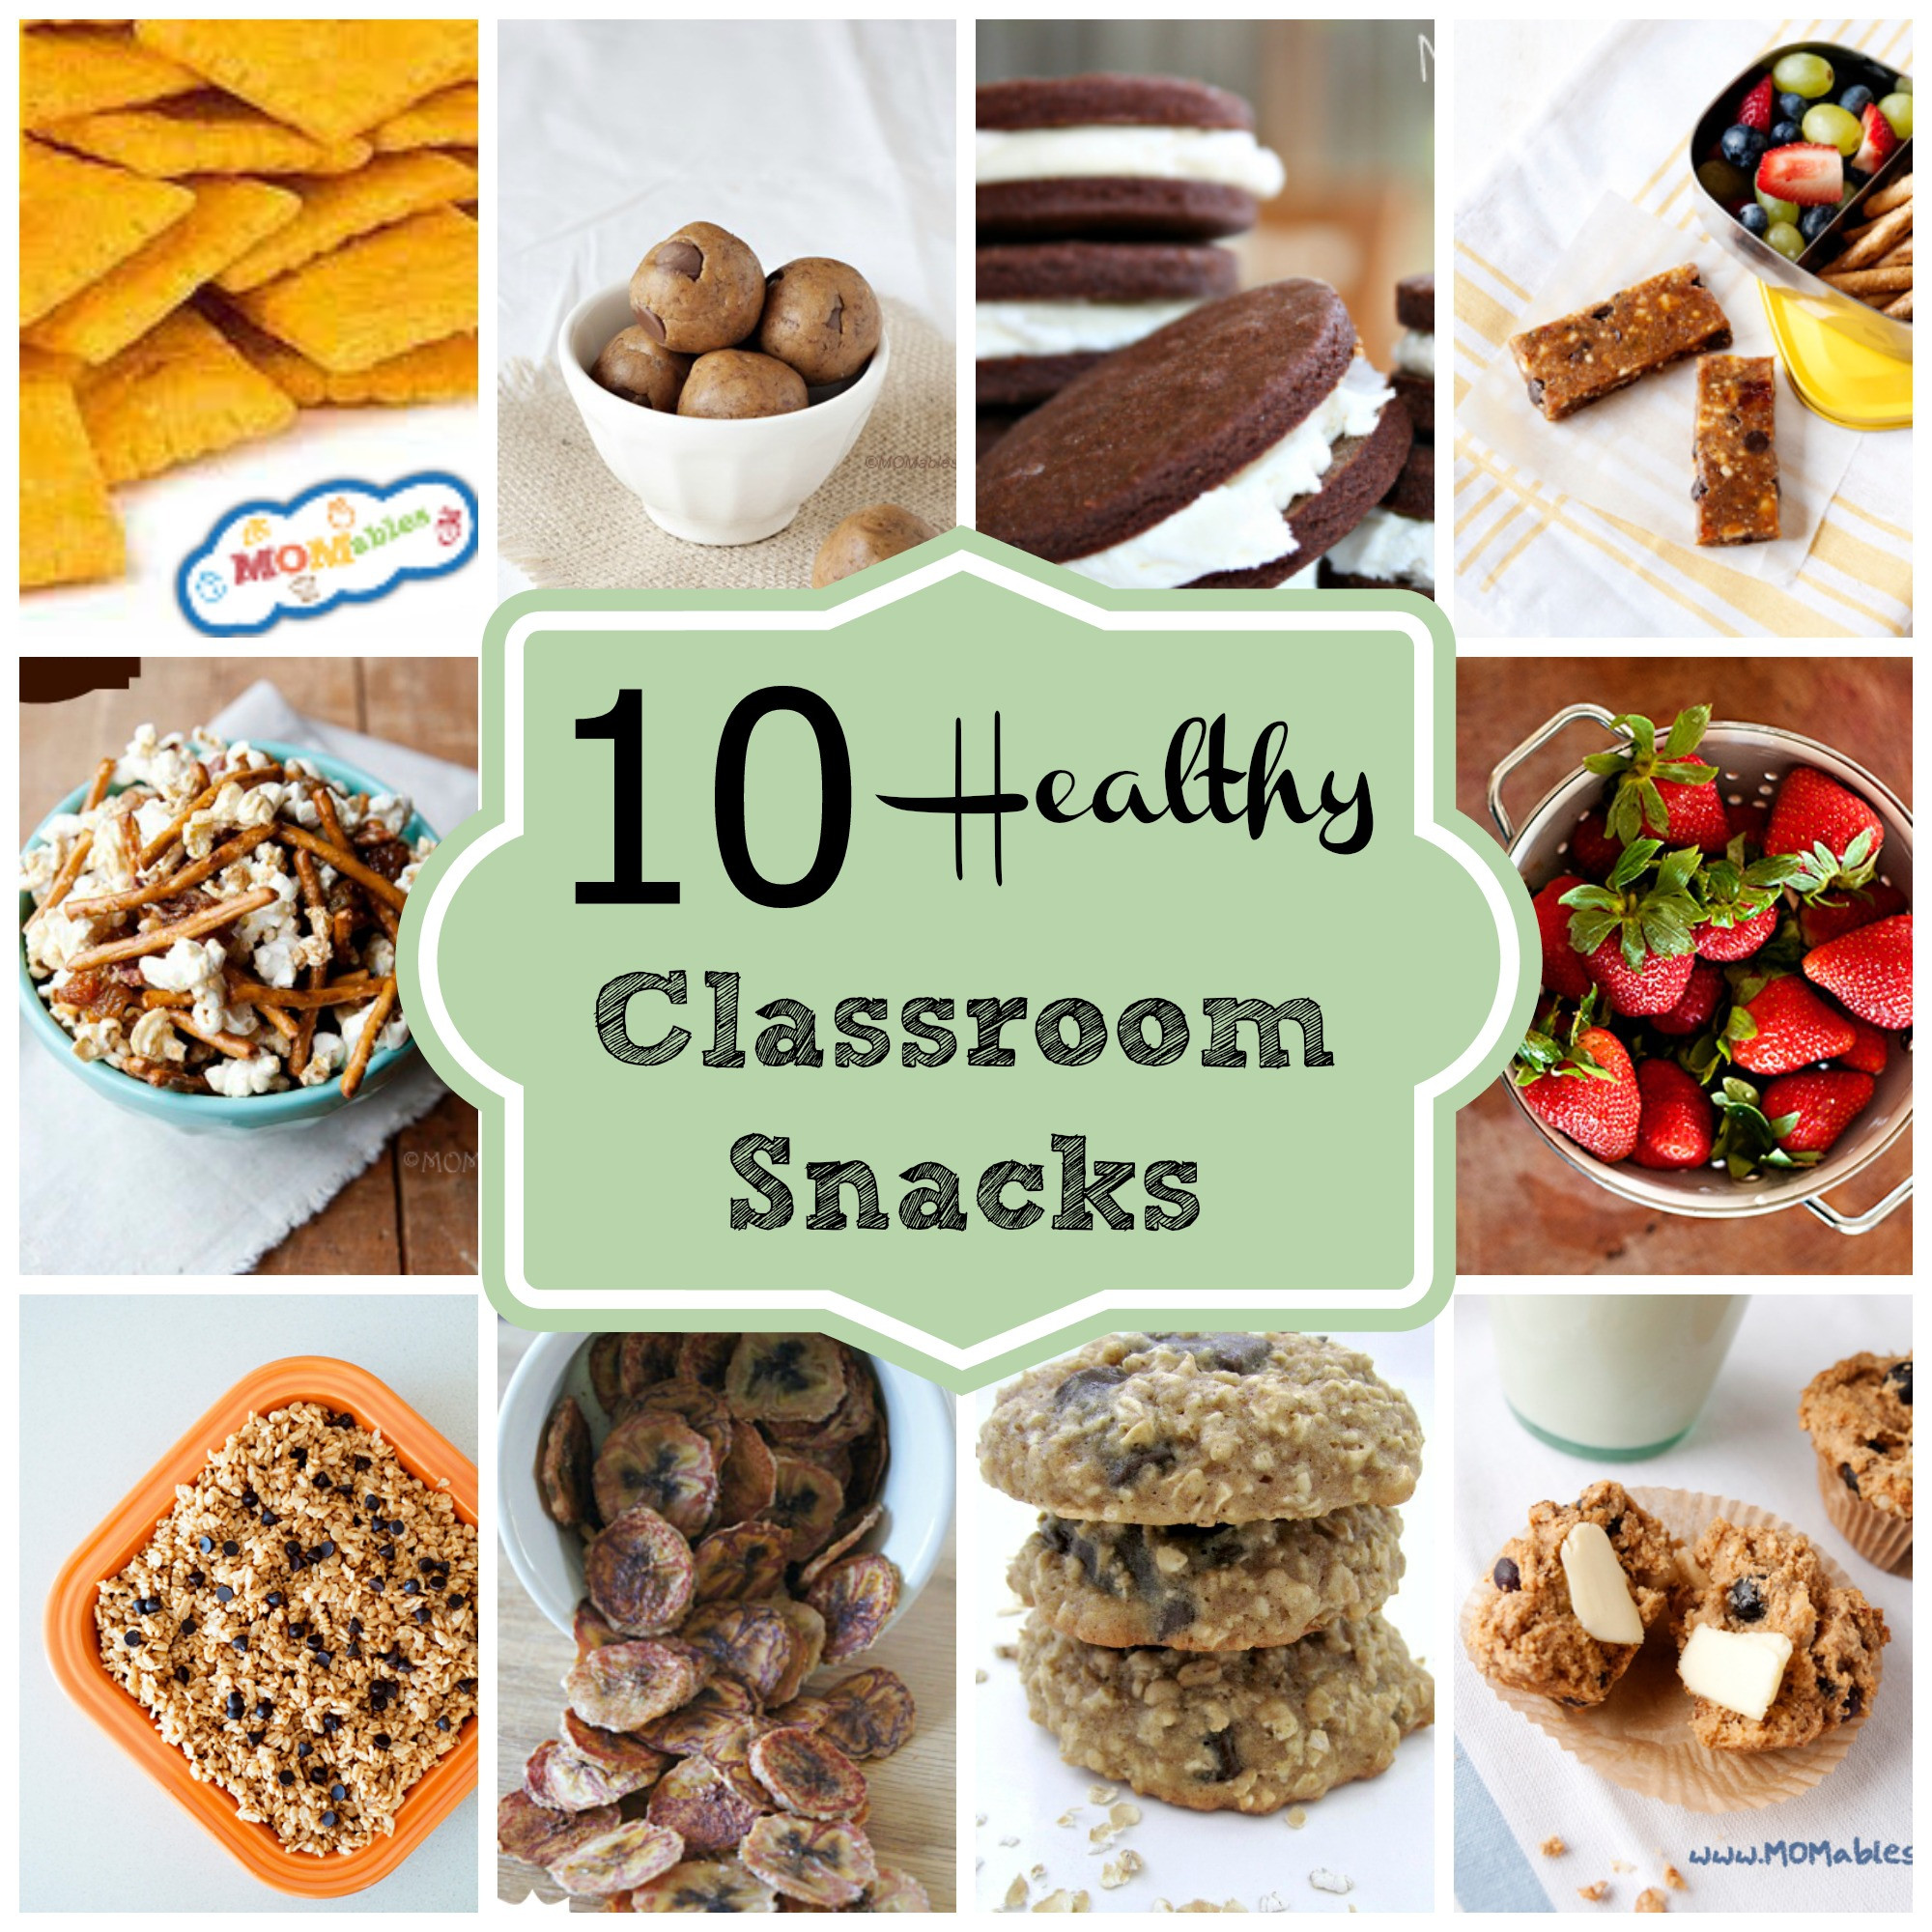 Healthy School Snacks
 10 Healthy Classroom Snacks